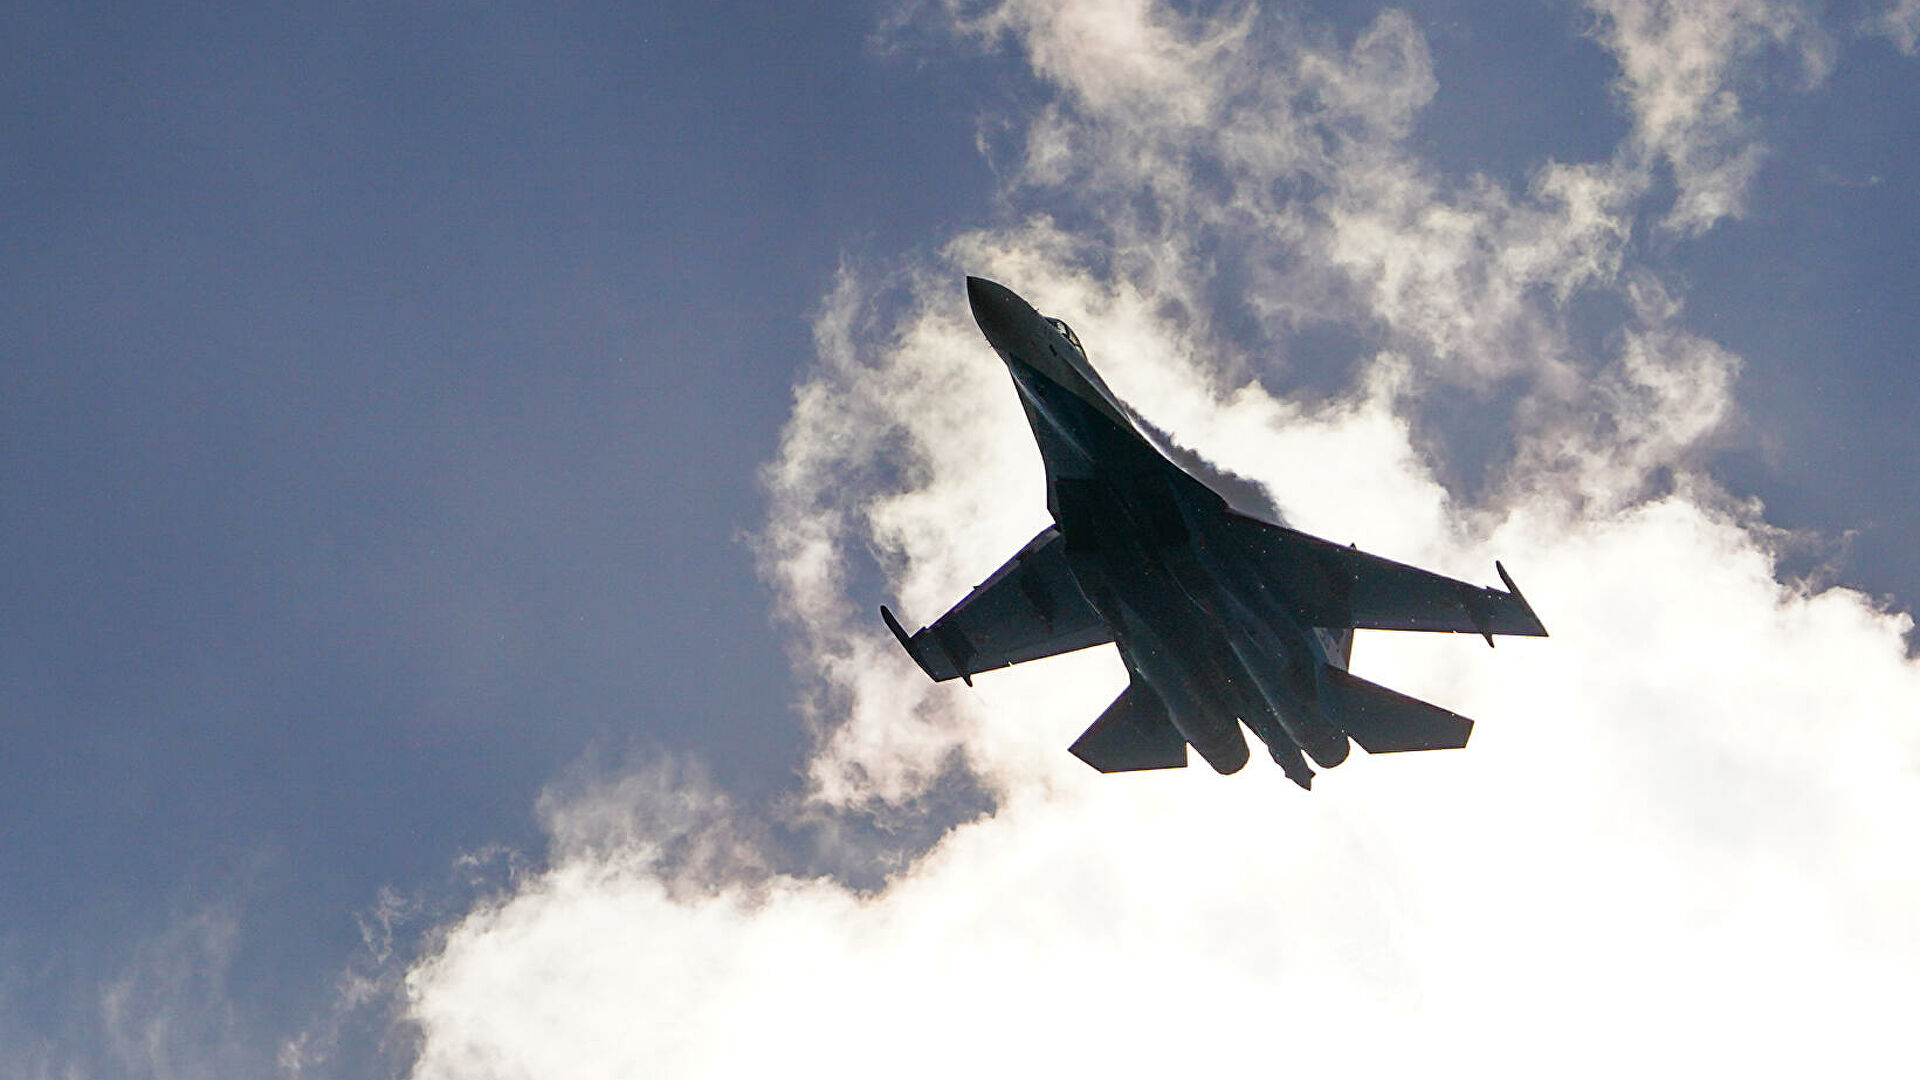 Российские истребители Су-35С отработают полеты на максимальную дальность в Белоруссии